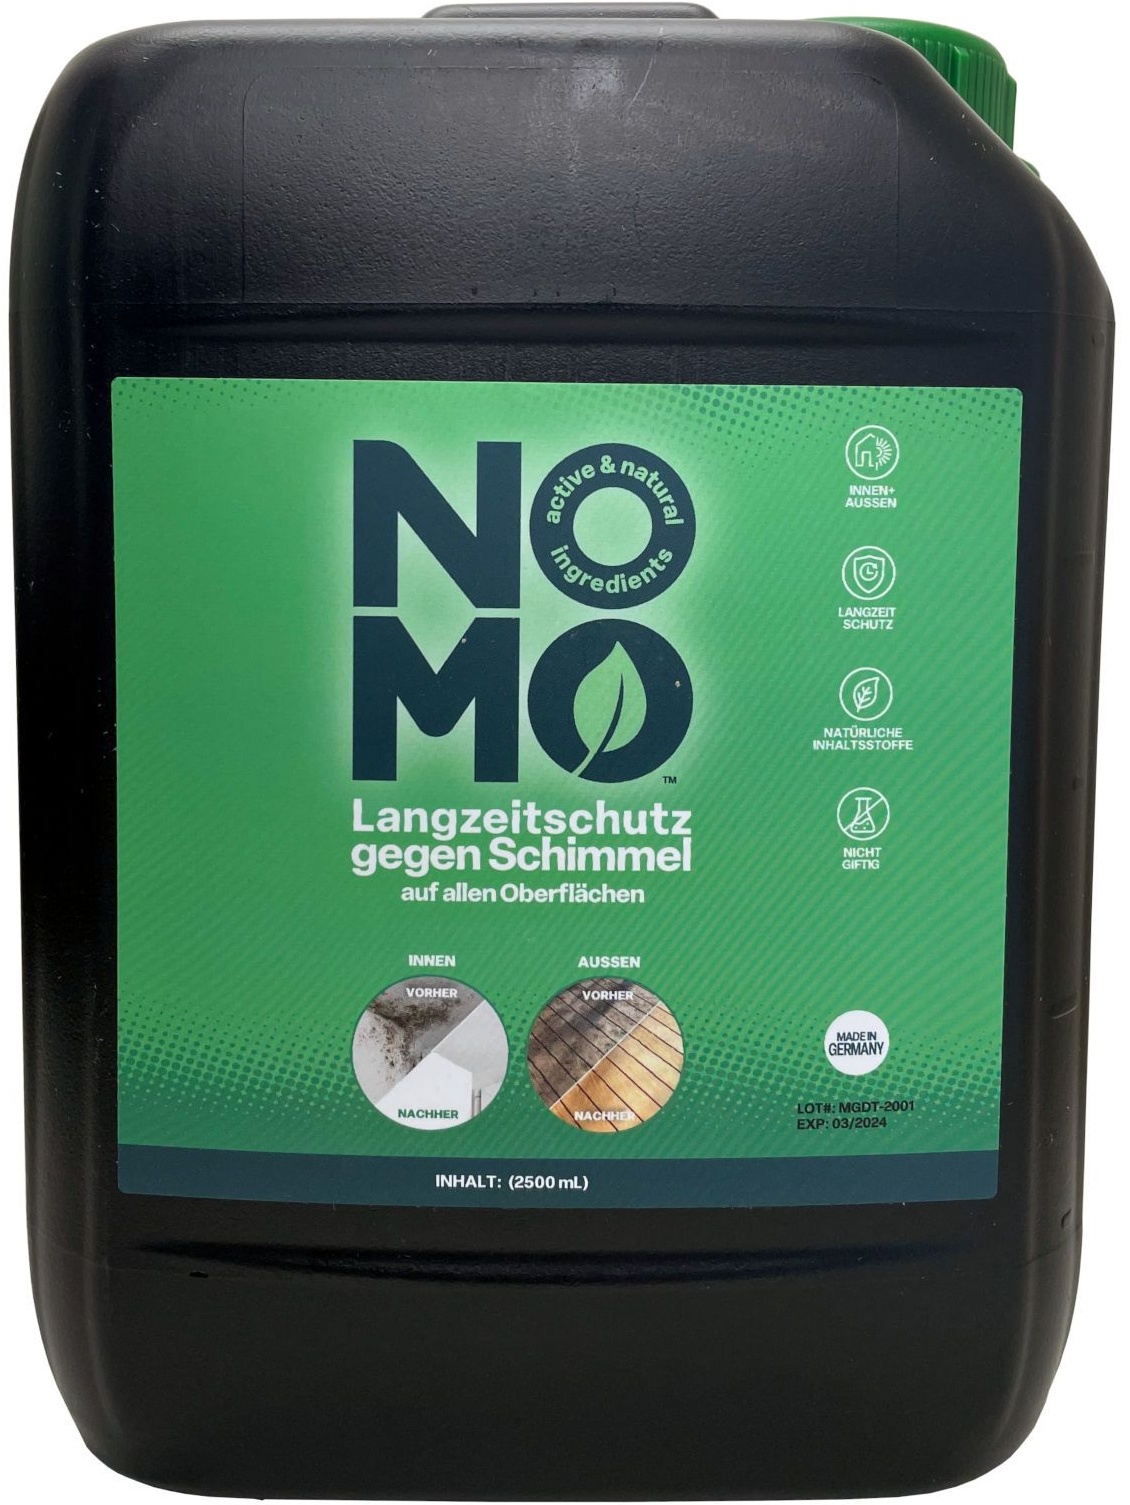 Nomo Natürlicher Langzeitschutz gegen Schimmel Lösung für einen Vernebler 2,5 l